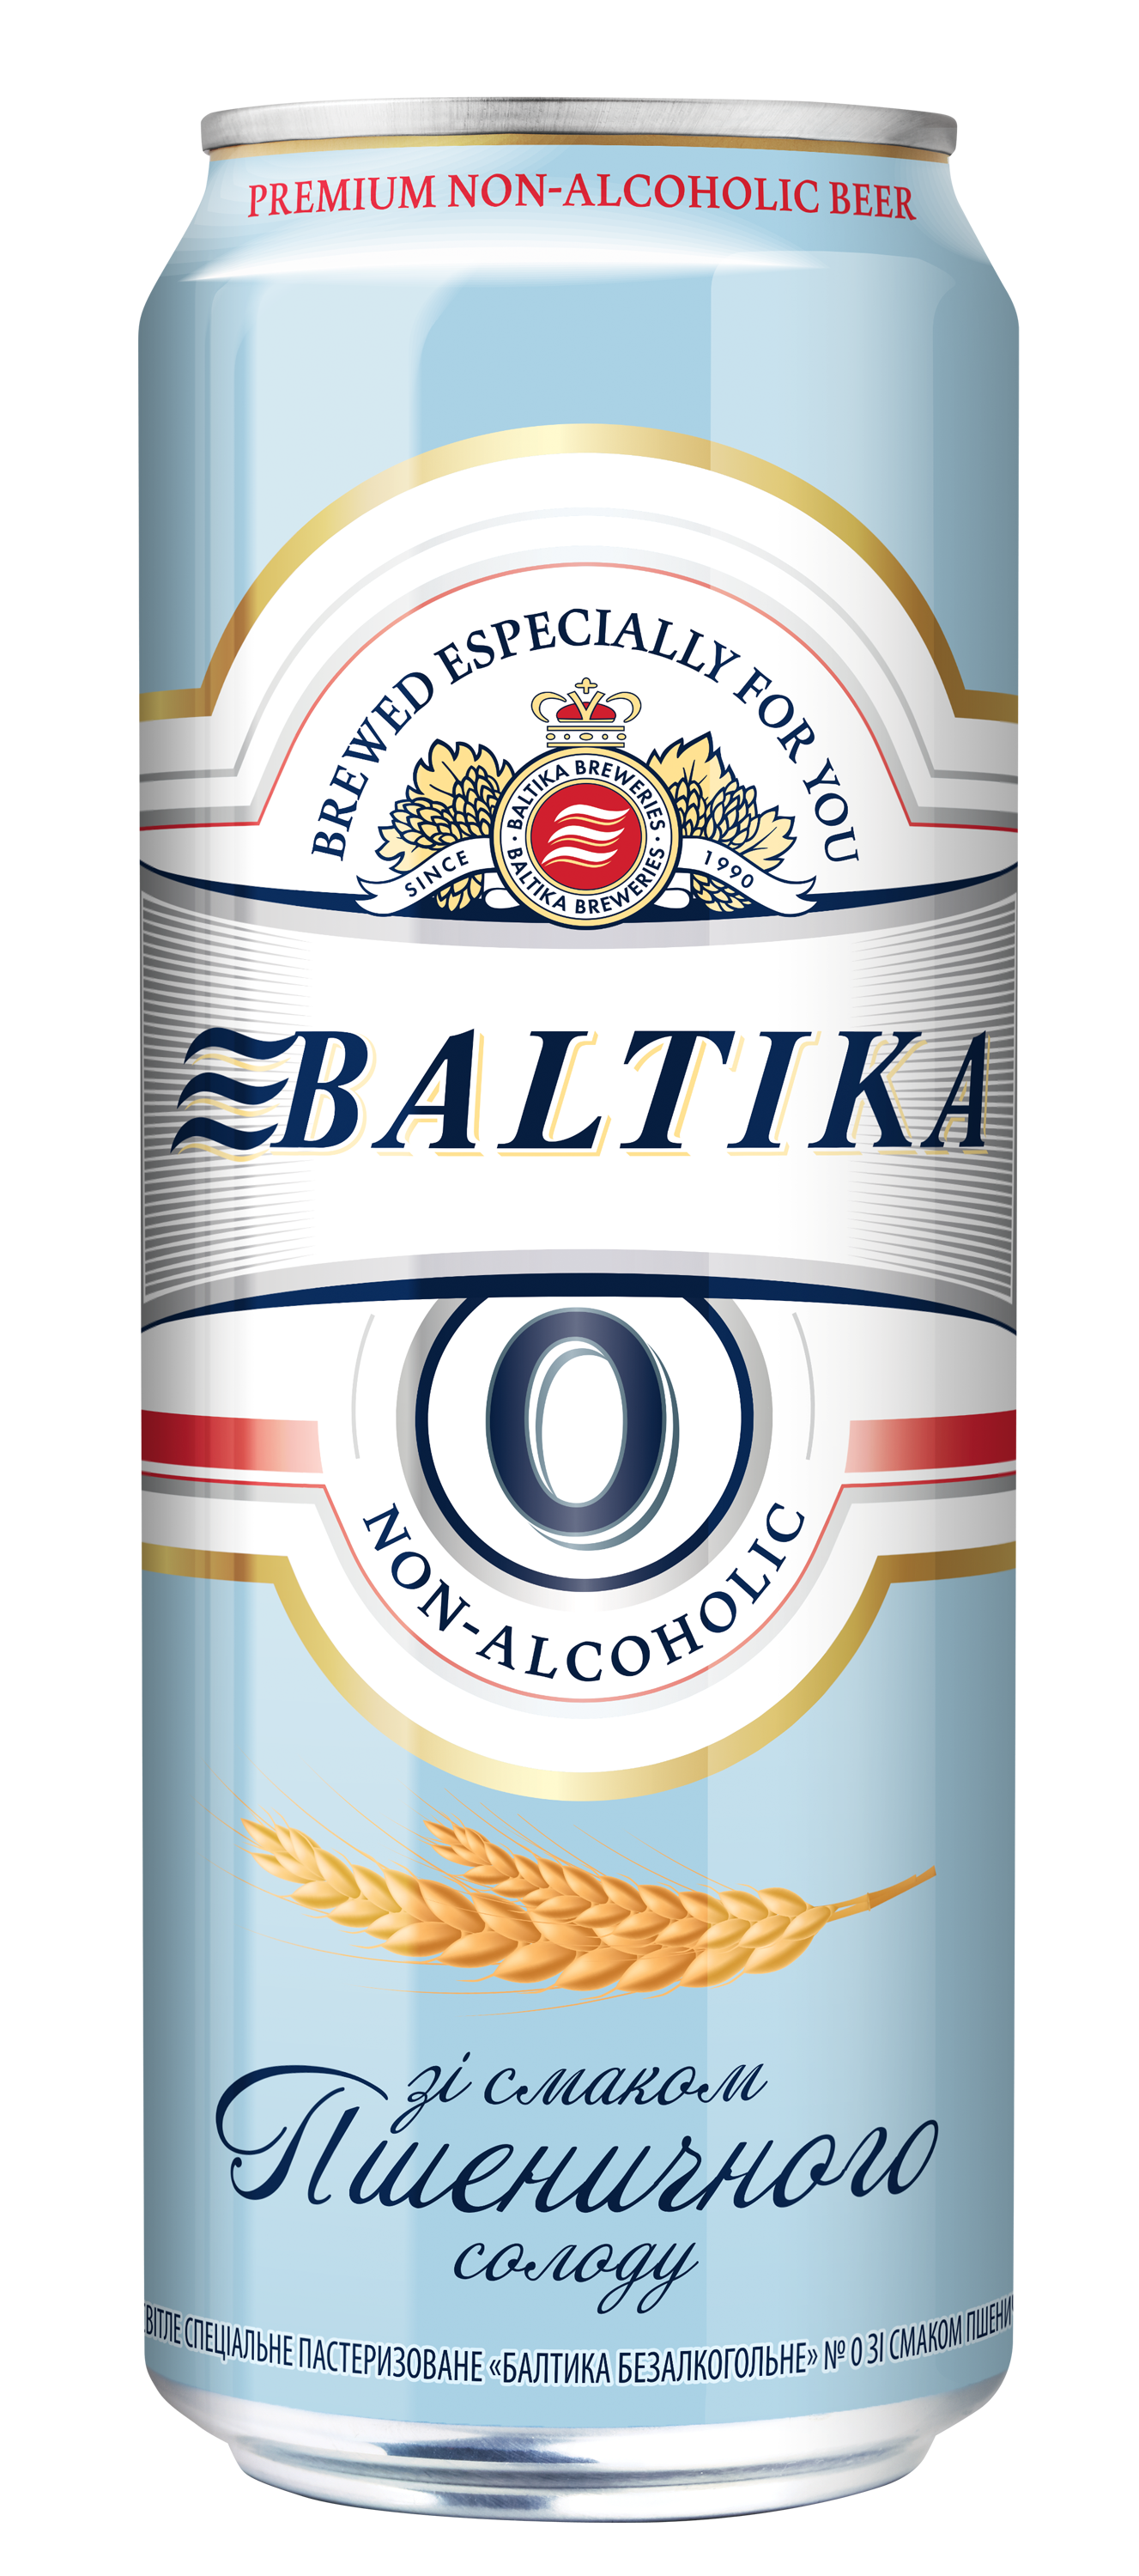 Украина. Безалкогольная новинка от Baltika